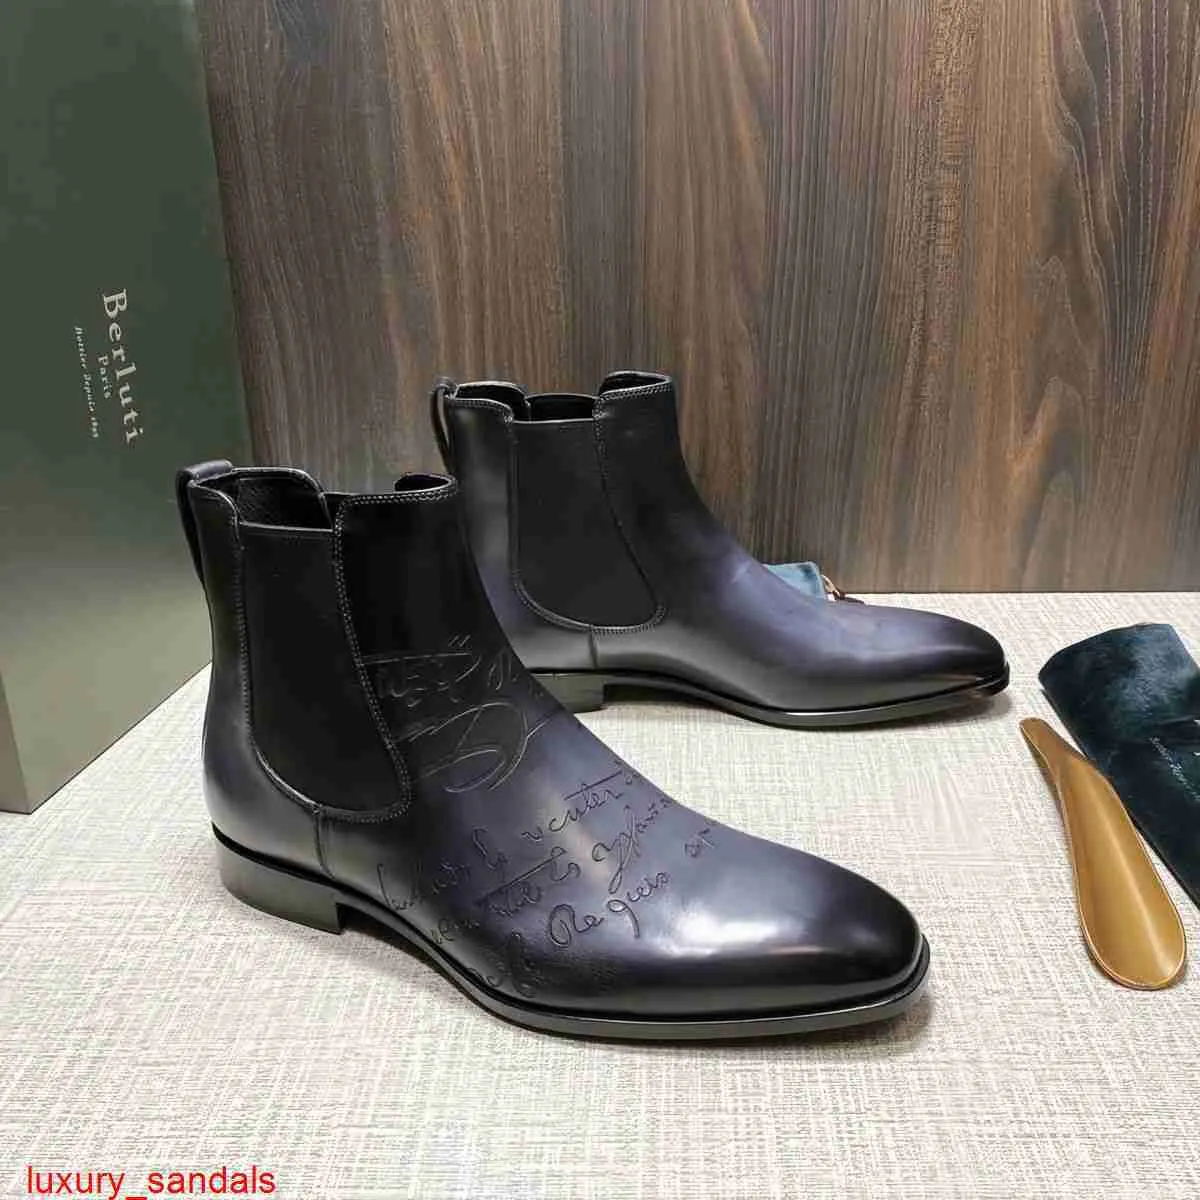 Кожаные ботинки BERLUTI, новые мужские кожаные ботинки из телячьей кожи, цветные протертые одношаговые короткие ботинки «Челси», кожаные ботинки в британском стиле с рисунком Scritto HBTS